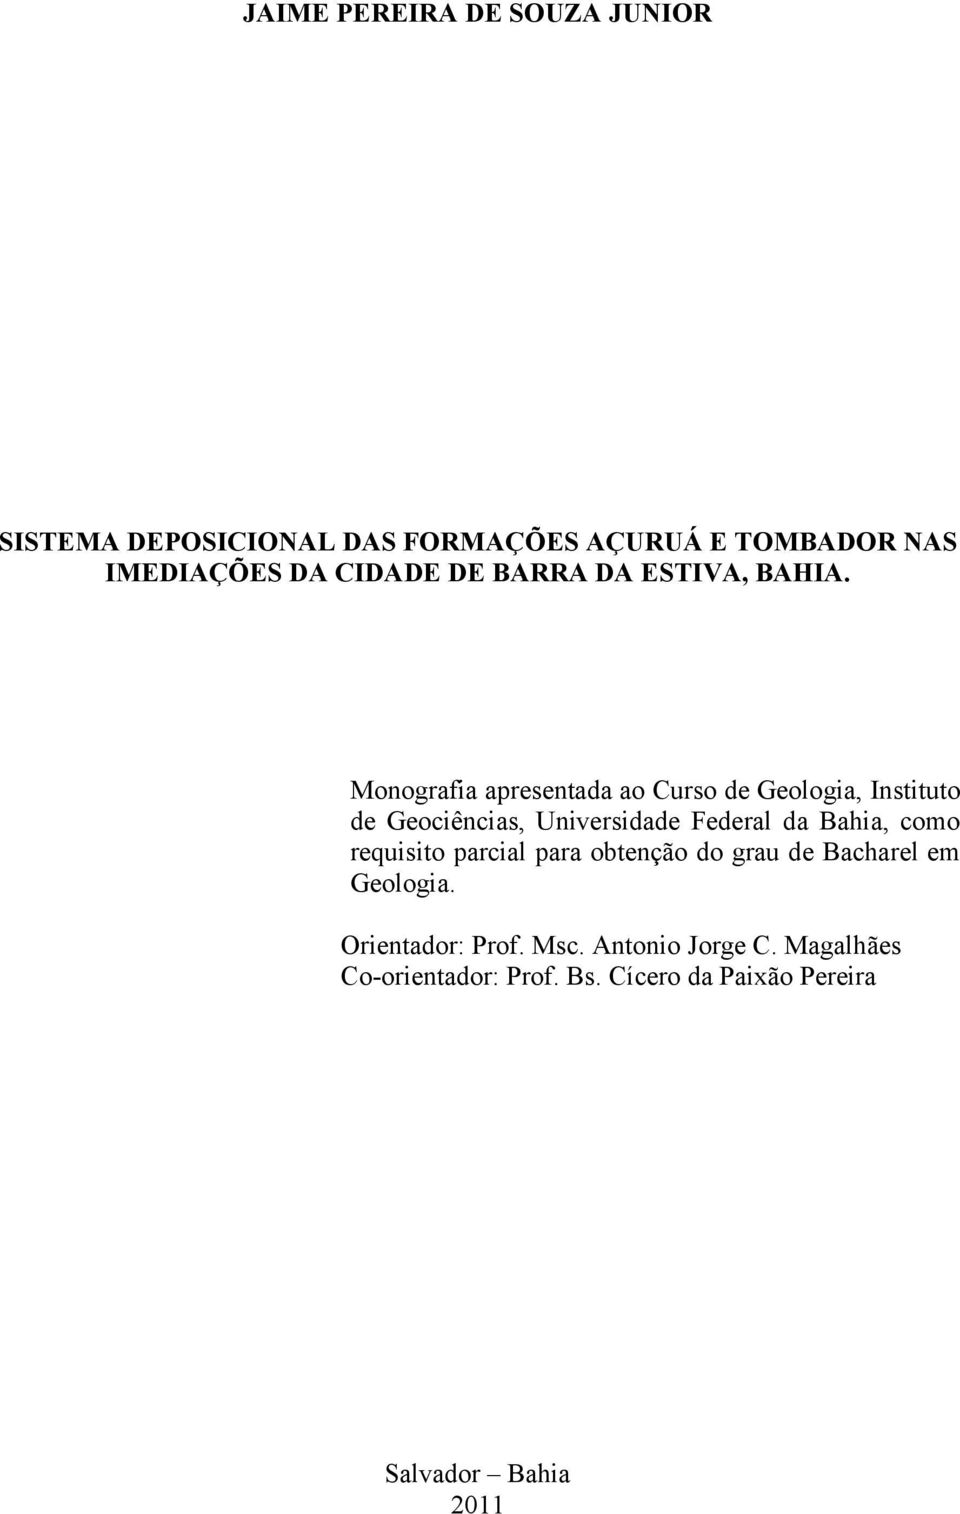 Monografia apresentada ao Curso de Geologia, Instituto de Geociências, Universidade Federal da Bahia, como